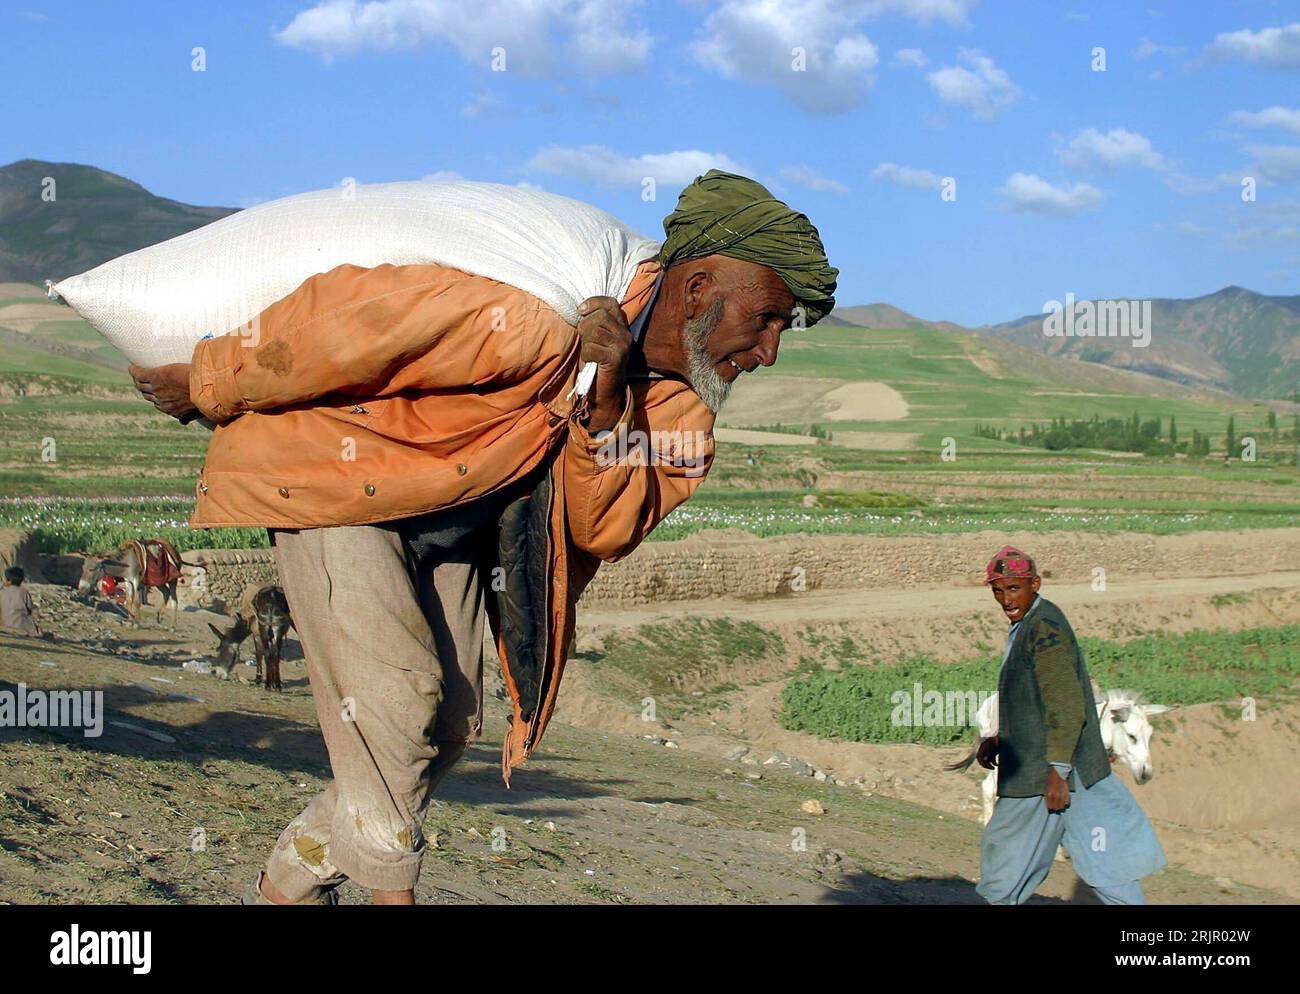 Bildnummer : 51264088 Datum : 23.06.2003 Copyright : imago/Xinhua Mann schleppt einen Sack mit Lebensmitteln den er vom Programme alimentaire mondial (PAM) erhalten Hat über ein Feld - Kabul PUBLICATIONxNOTxINxCHN, Personen ; 2003, Kabul, Mann, Männer, Sack, Säcke, Hilfslieferung, Hilfslieferungen, Programm, Vereinte Nationen, ONU, Hilfsprogramm, Hilfsprogramme, Welternährungsprogramm, Hilfsaktion, Hilfsaktionen, Nahrungsmittel, Lebensmittel; , quer, Kbdig, Einzelbild, Afghanistan, , / Hilfsgüter Banque D'Images